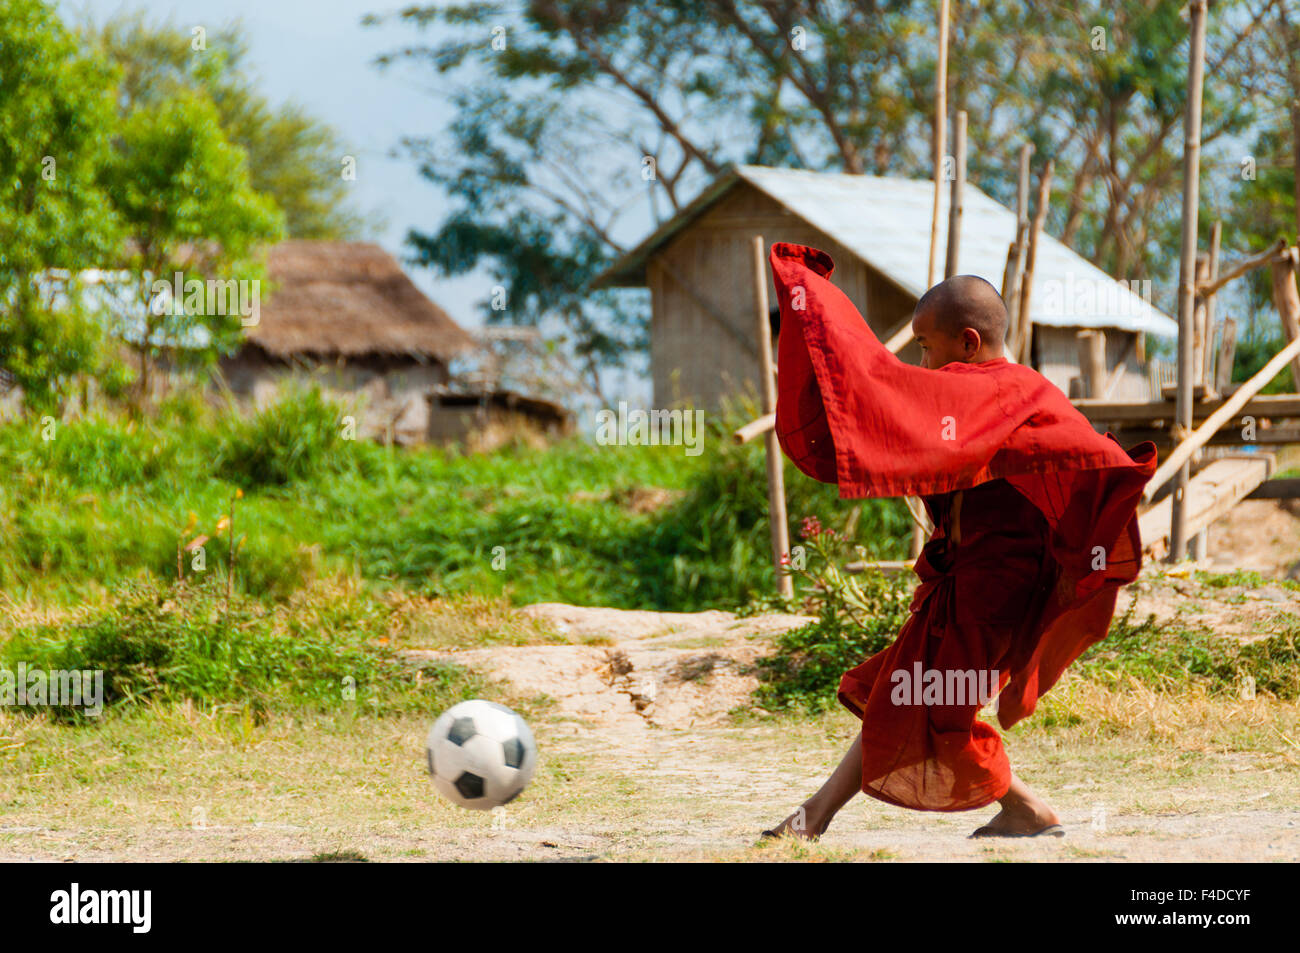 Mönch im roten Gewand Fußball spielen Stockfoto